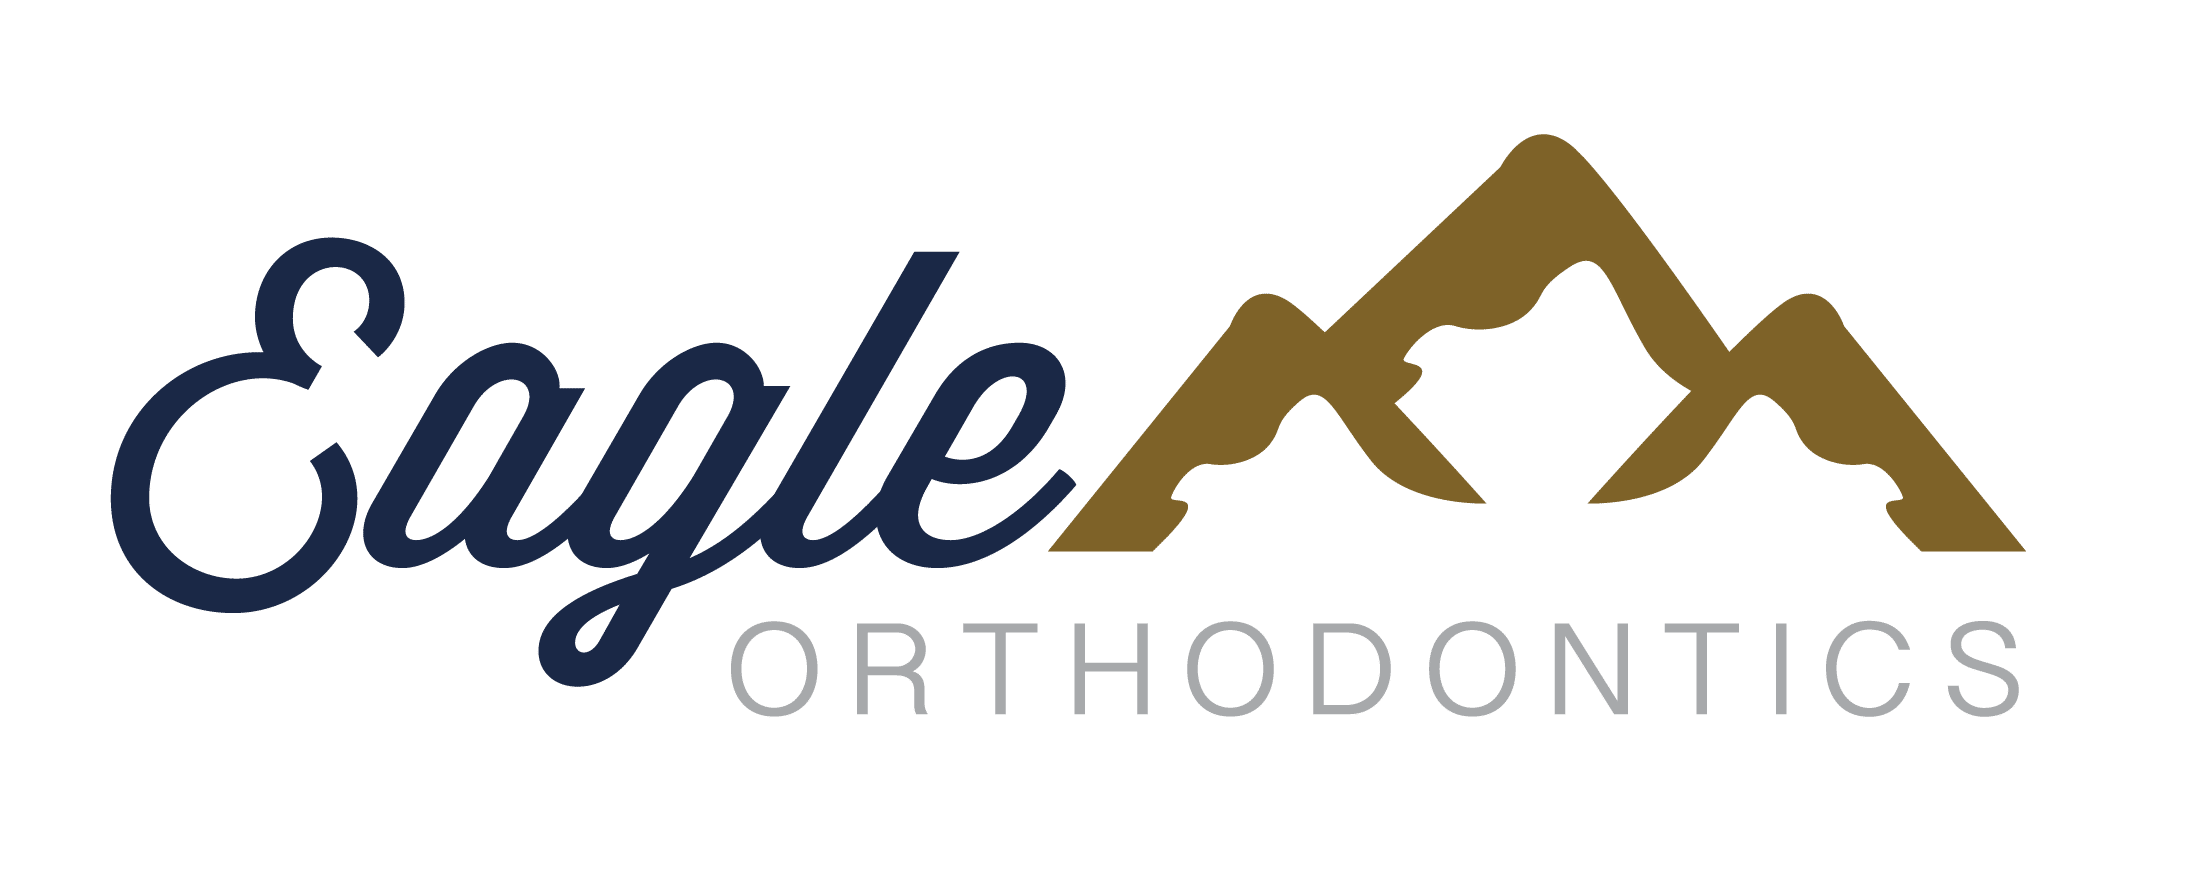 Eagle Orthodontics